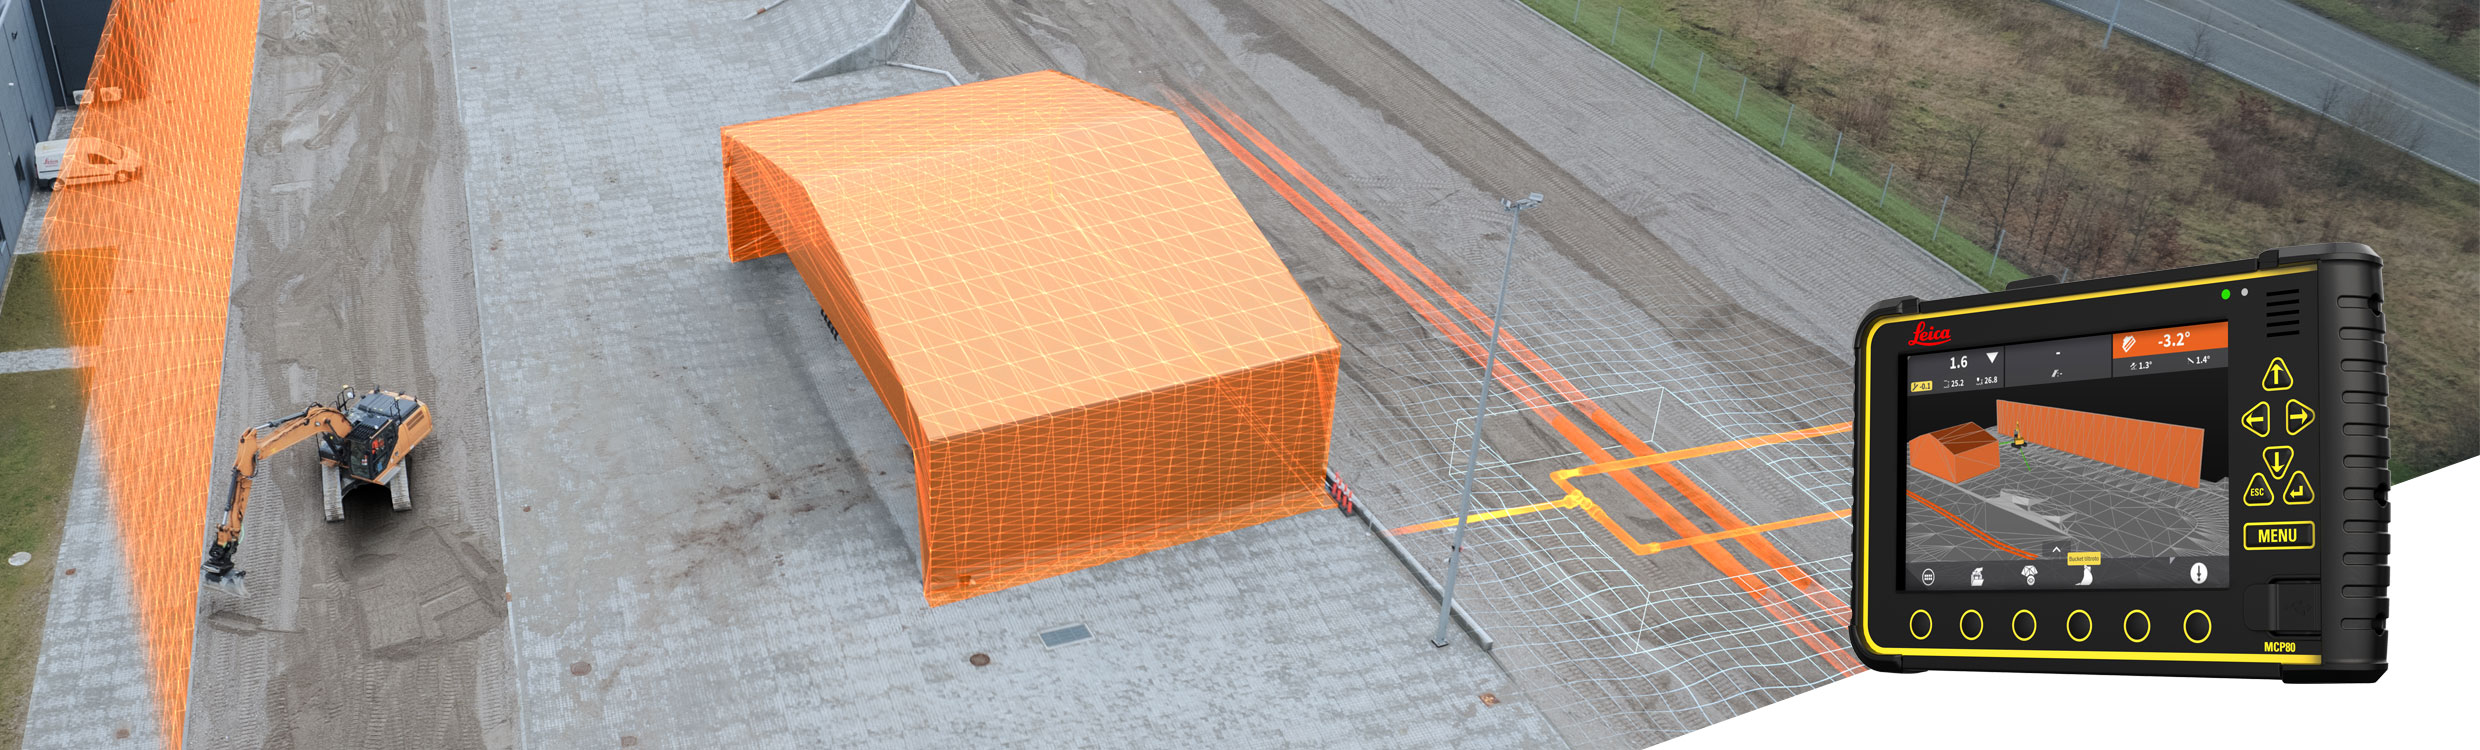 Mit der Einrichtung von 3D-Sicherheitszonen können Stromkabel, unterirdische Versorgungsleitungen und Arbeiten in direkter Nähe zu Fußgängerwegen, Fahrbahnen und Straßen geschützt werden. Bild: Leica Geosystems AG.